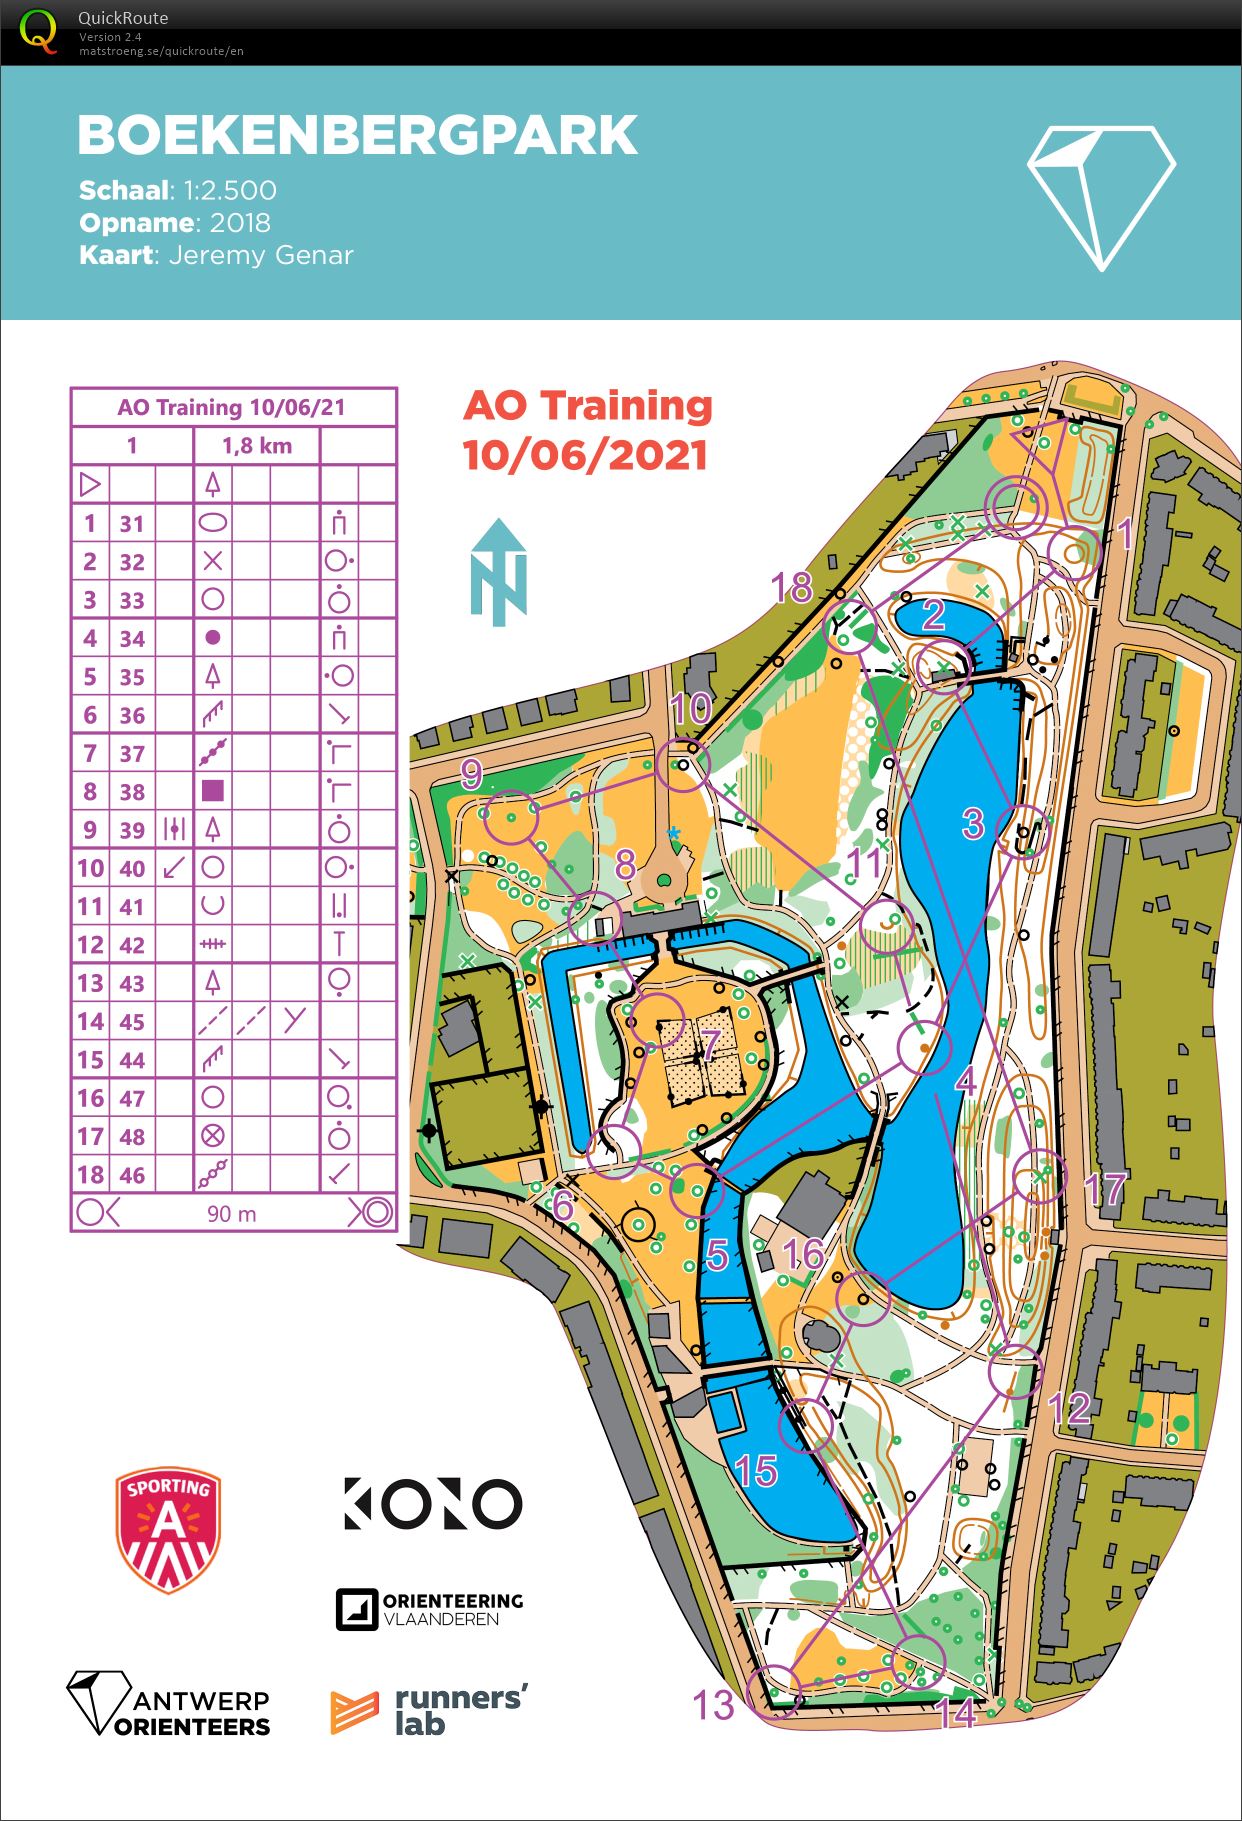 AO Training Boekenbergpark (10/06/2021)